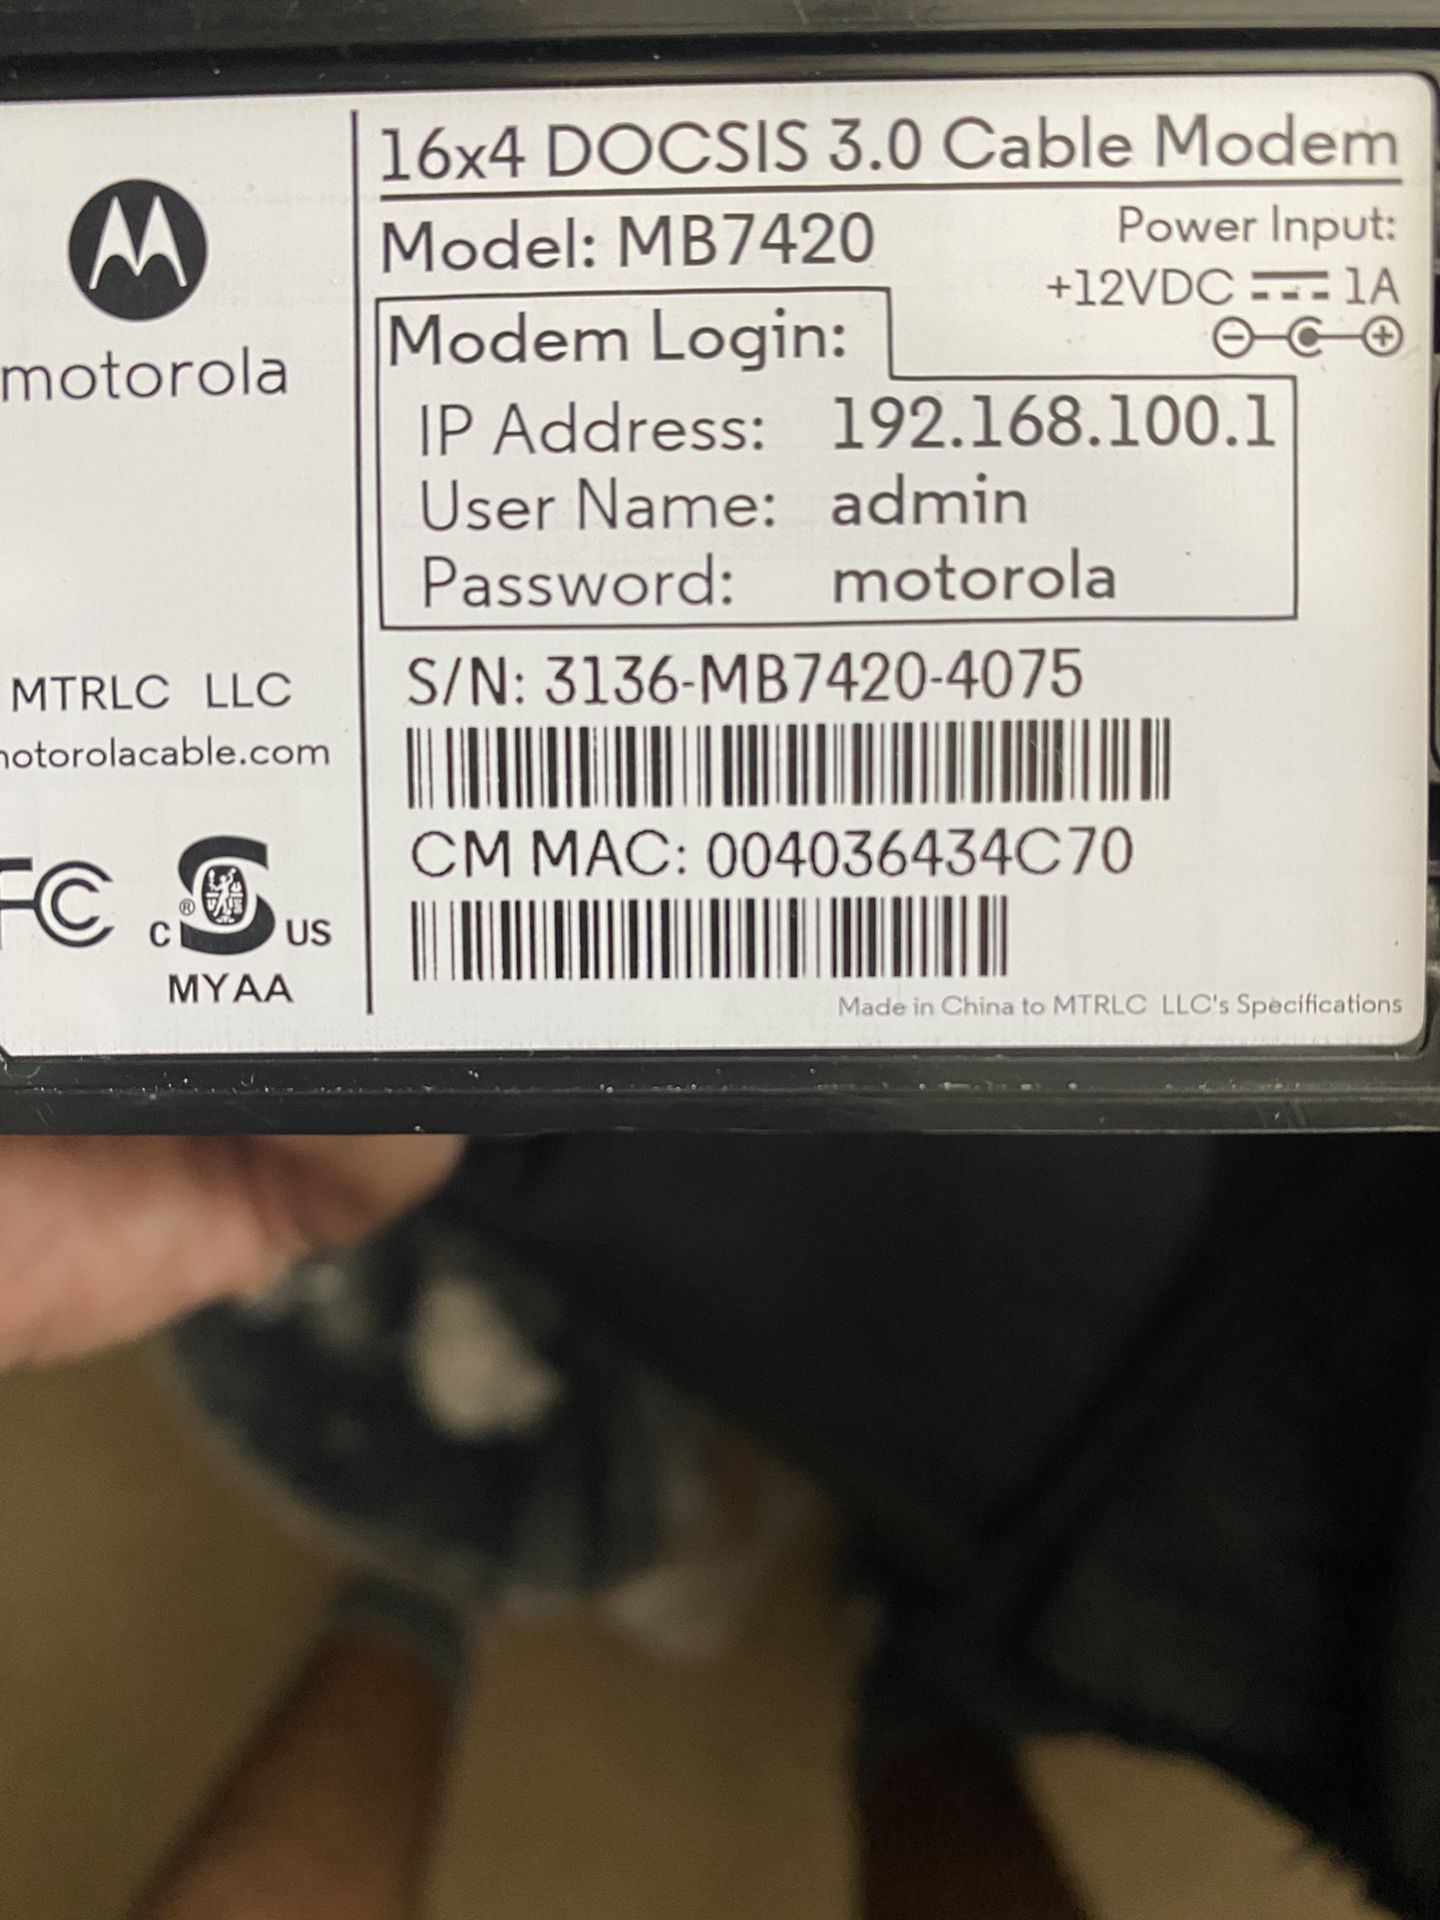 Motorola modem docsis 3.0